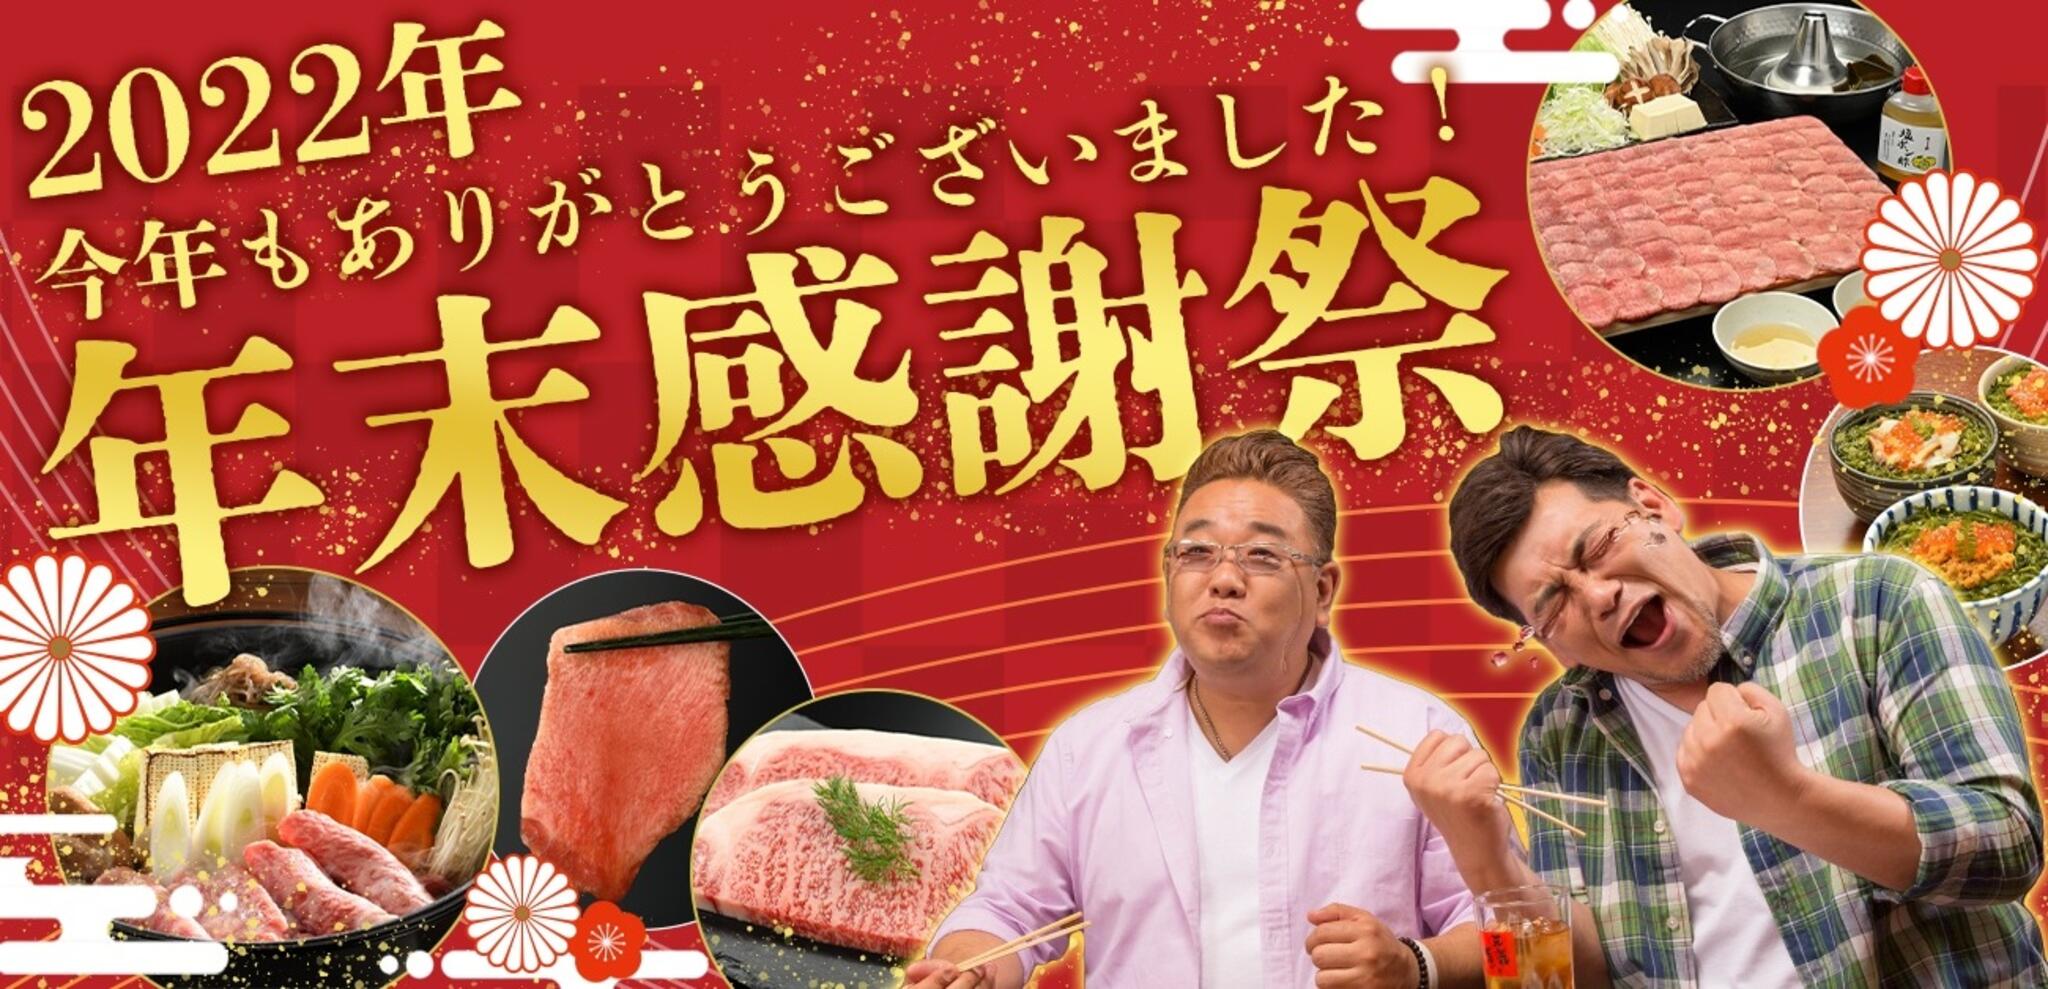 焼肉冷麺やまなか家 泉松森店からのお知らせ(🏳‍🌈2022年《オンラインショップ》年末感謝祭)に関する写真